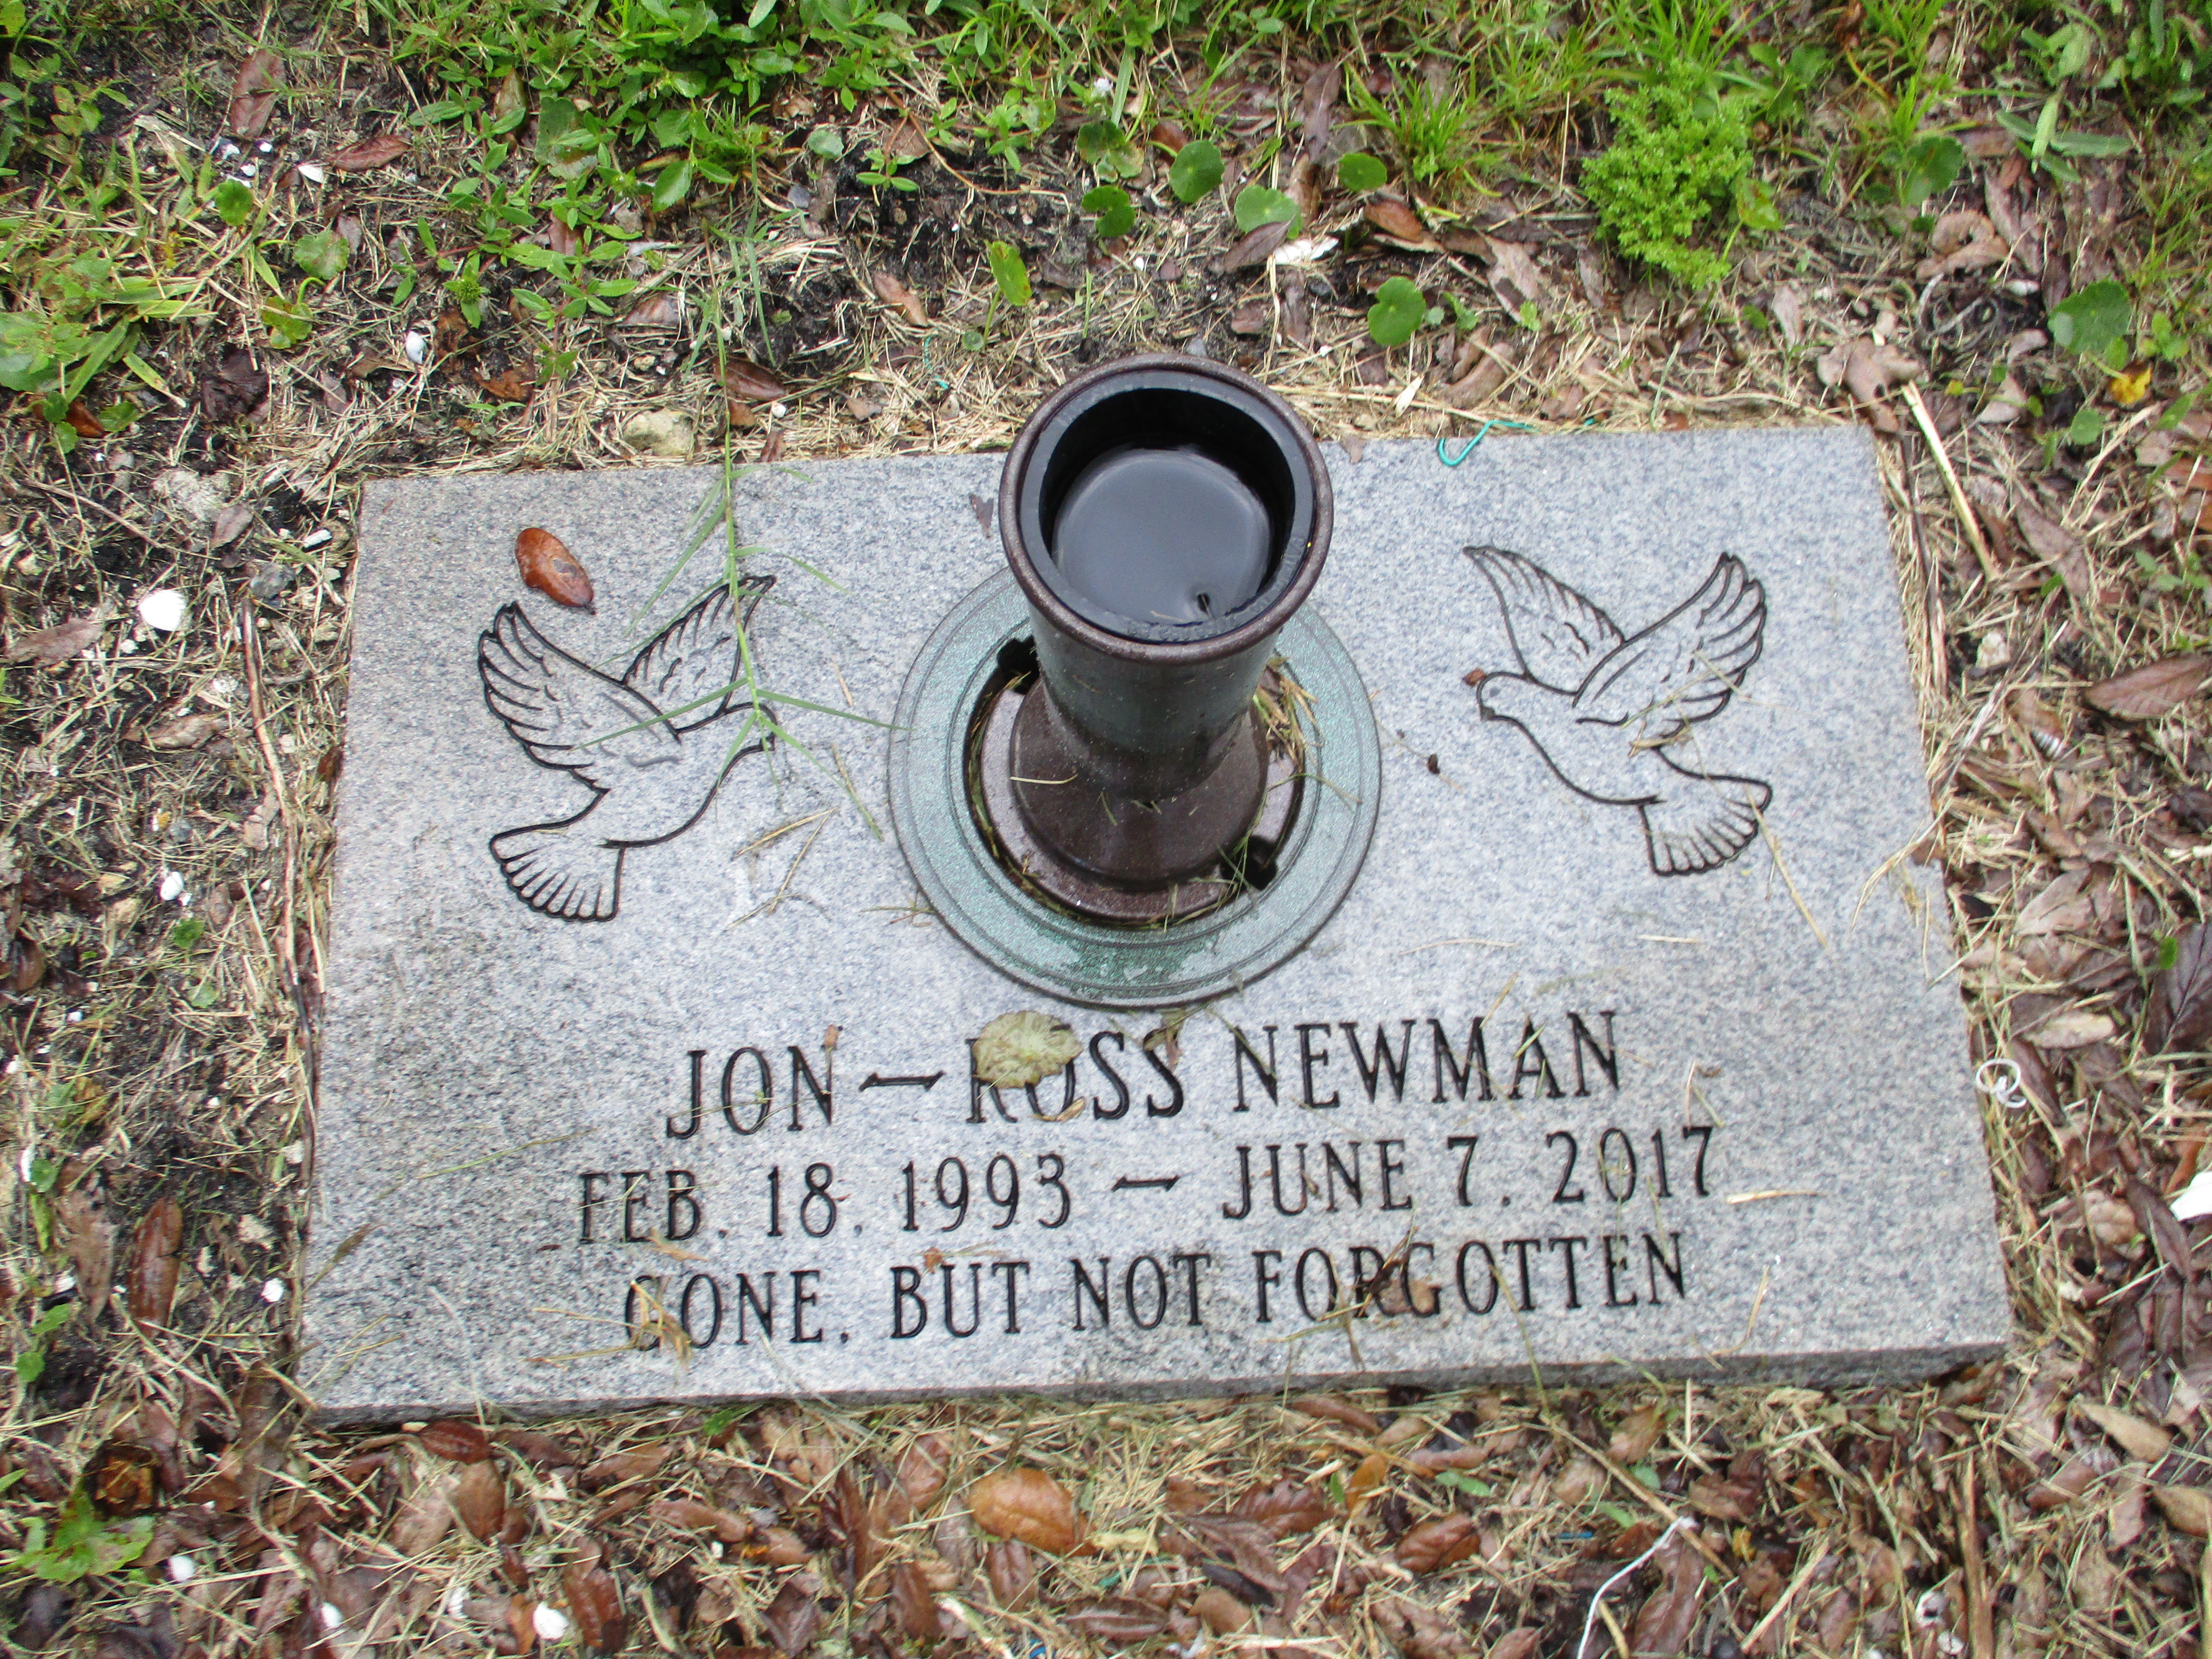 Jon-Ross Newman